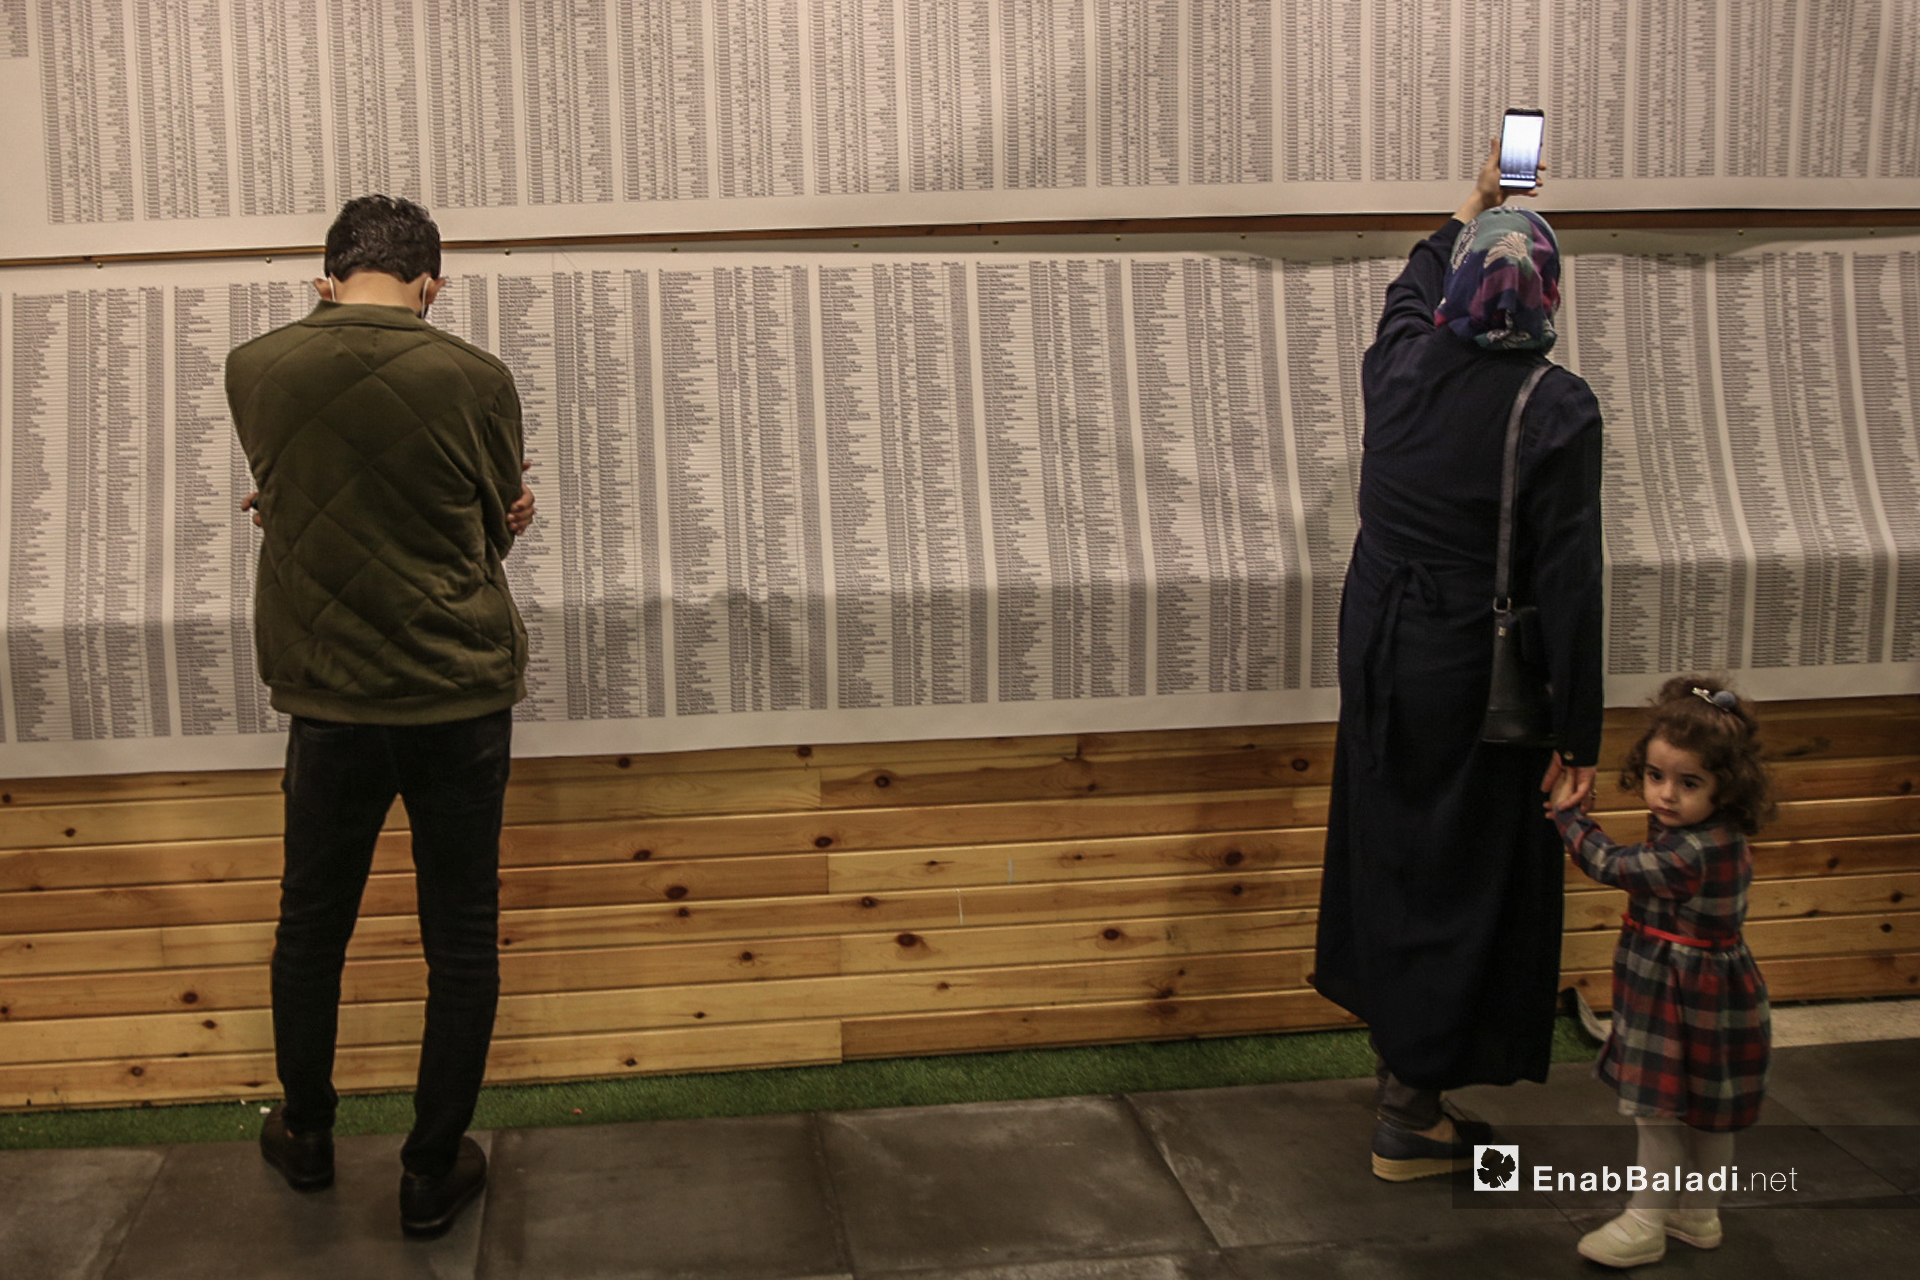 ناشطين في معرض "سُكّان الذاكرة"
الذي يوثق بالصور والأسماء والتواريخ 4600 طفل سوري على لوحة طولها 70 متر في إسطنبول - 13 تشرين الأول (عنب بلدي/ عبد المعين حمص)
